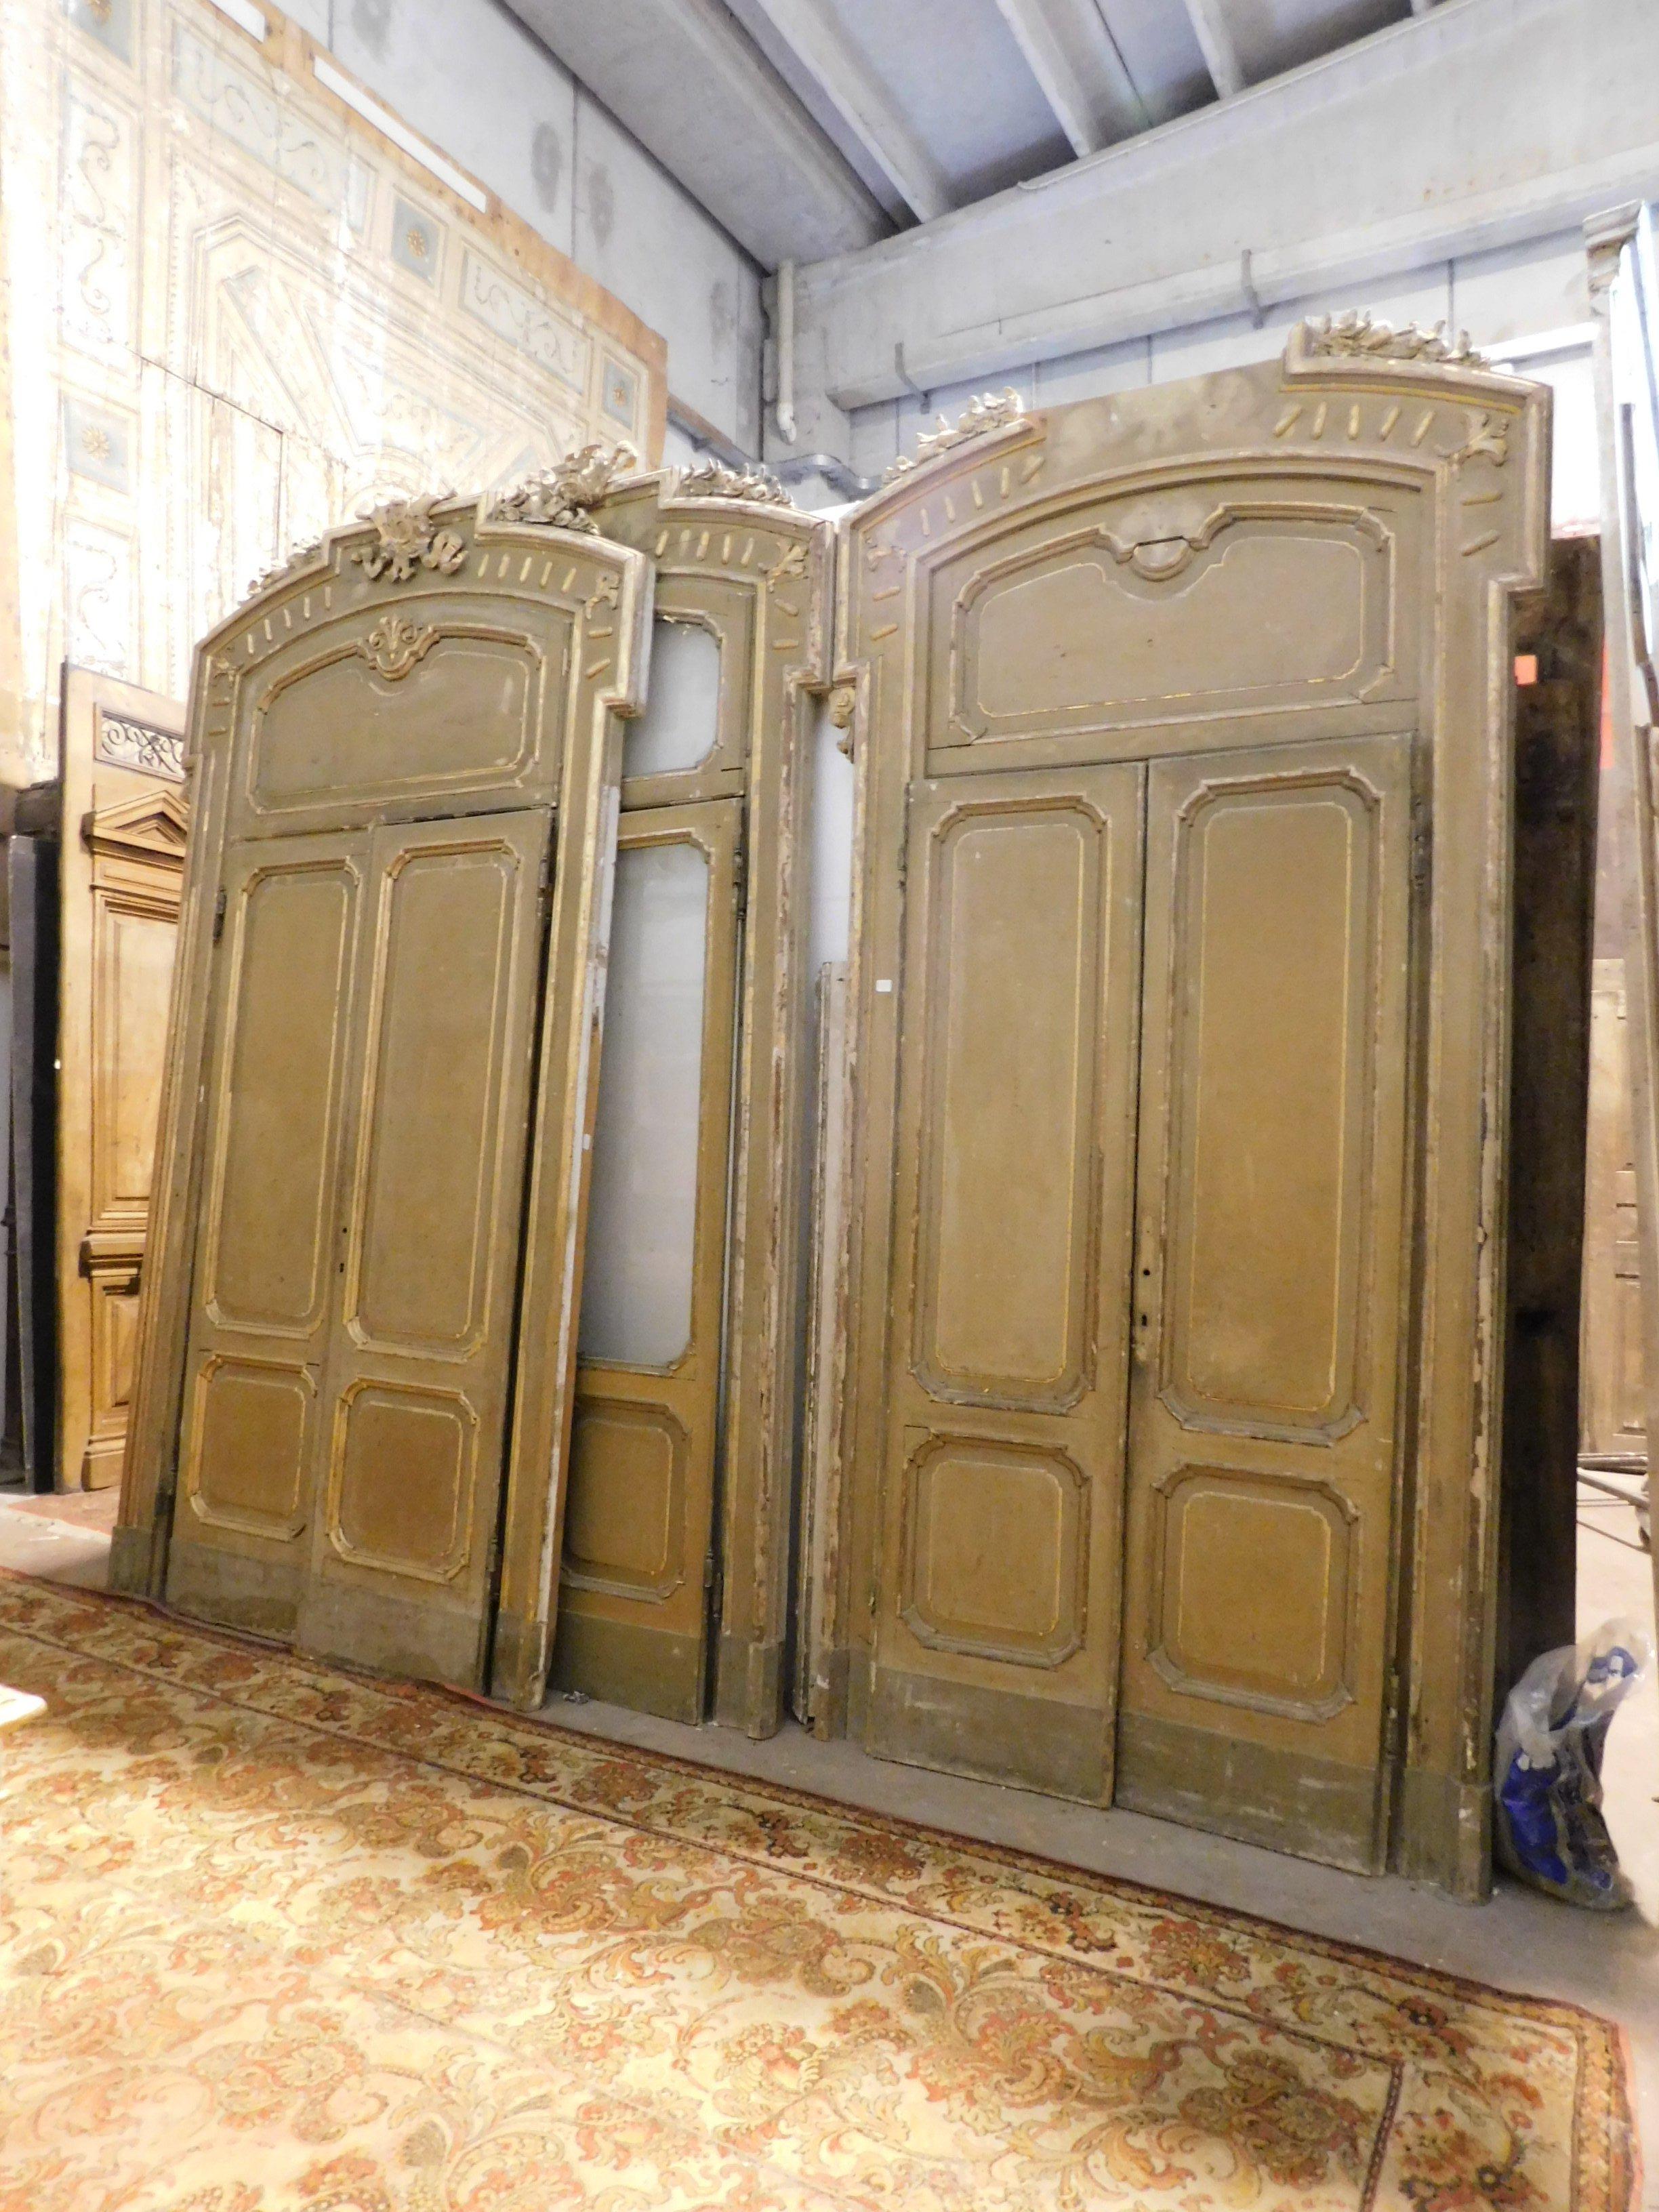 Antike Sätze von n. 4 vergoldeten lackierten Türen, bestehend aus zwei Glastüren und zwei Türen mit Verkleidung, schön und elegant, mit Charme des alten Mailand Italienisch.
Sie stammen aus einer aristokratischen Villa aus den 1800er Jahren, mit